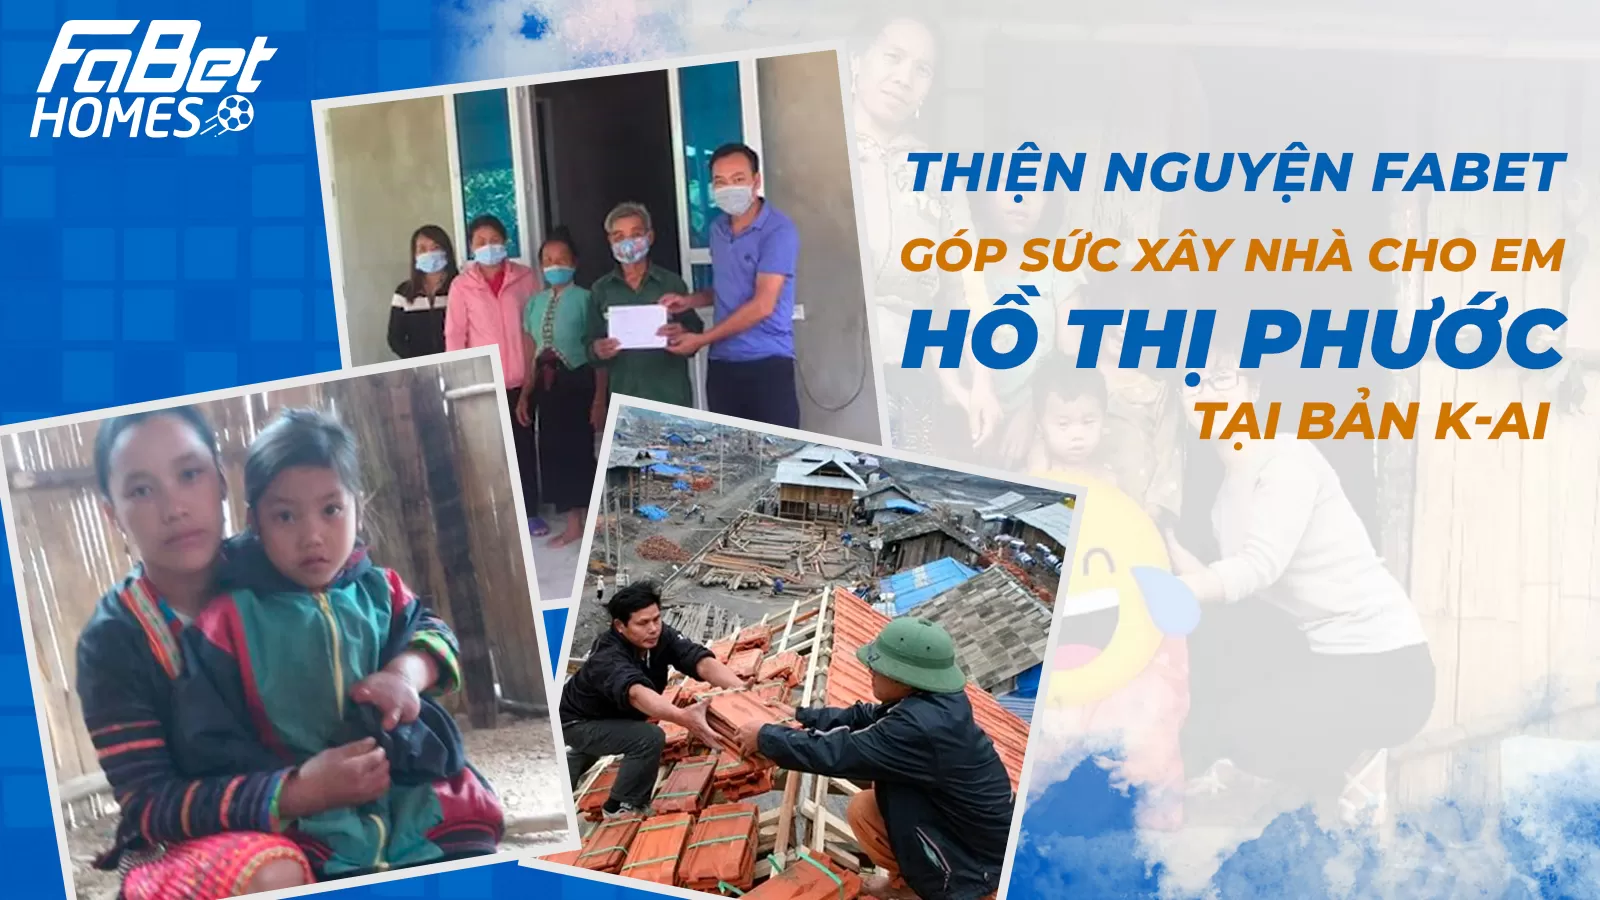 Fabet chung tay góp sức xây nhà cho em Hồ Thị Phước tại bản K-Ai